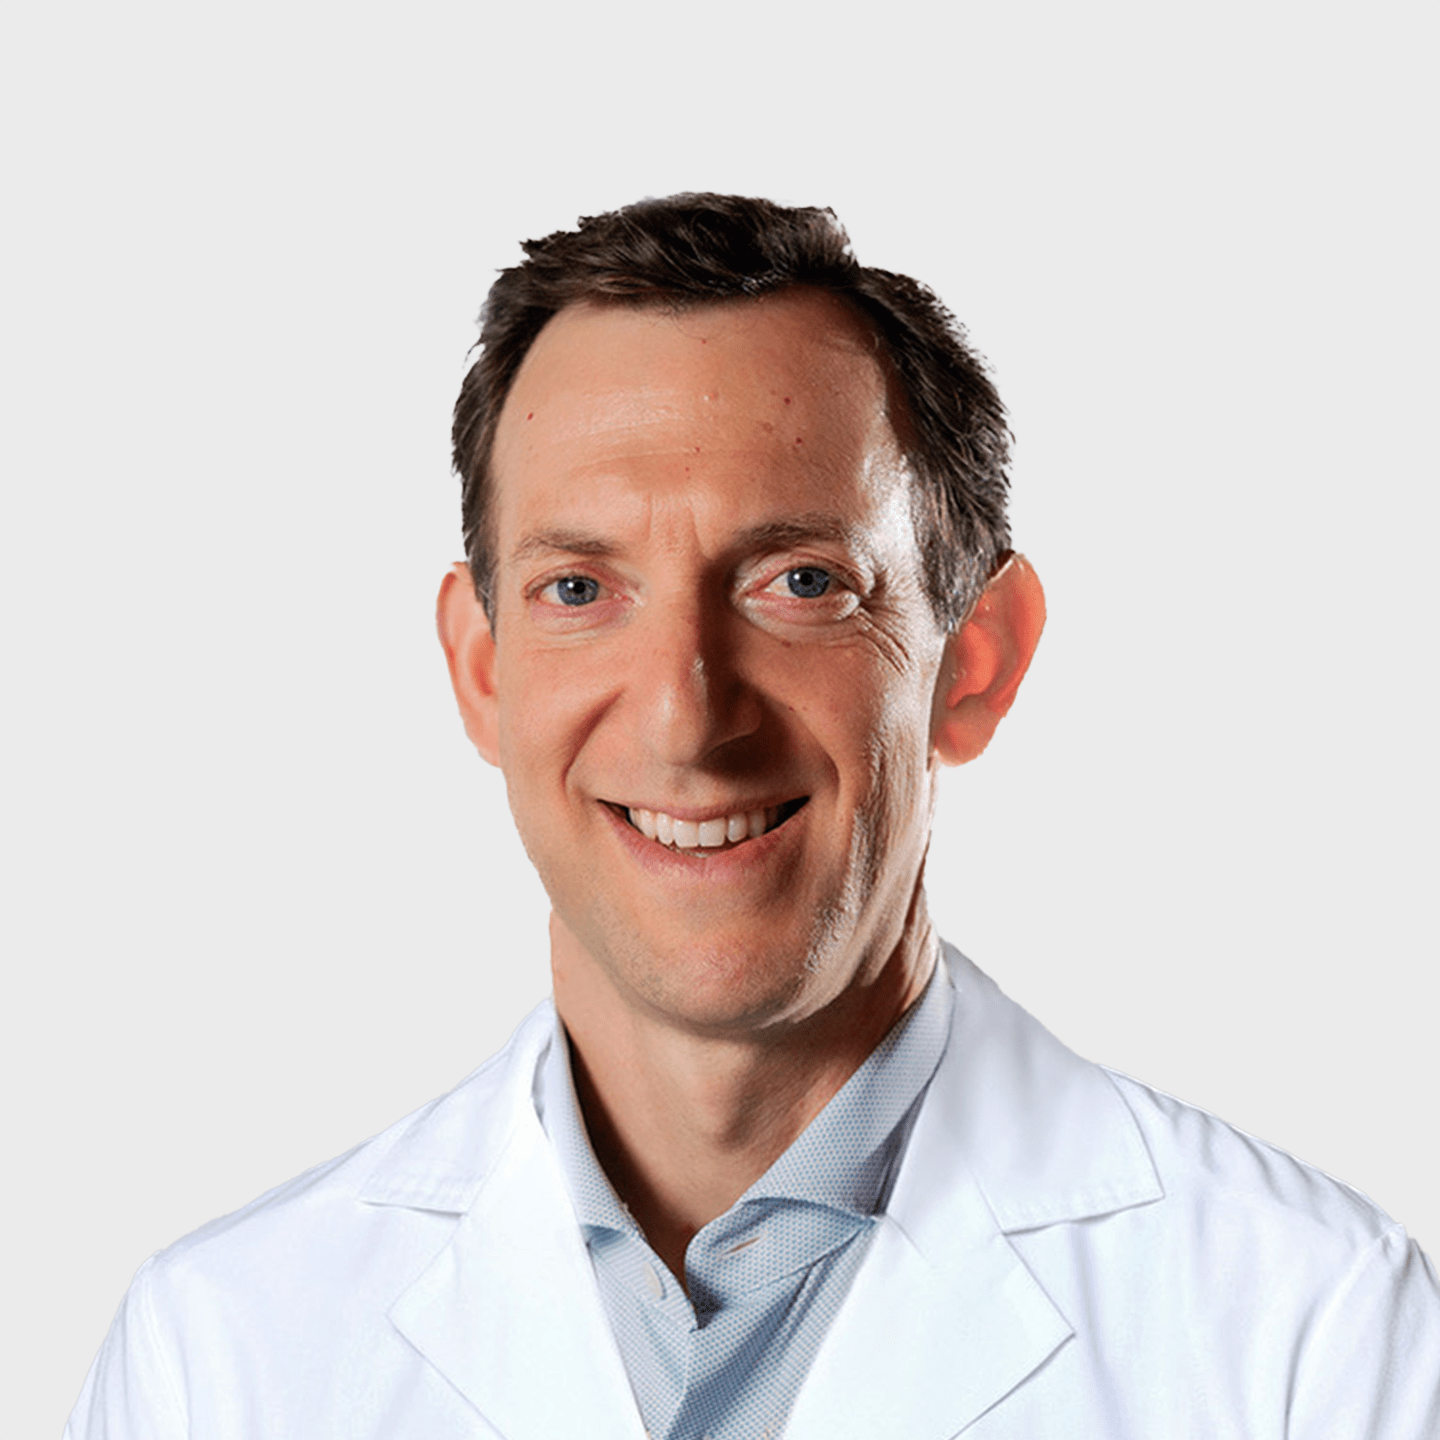 Physician Spotlight on Dr. David Hergan